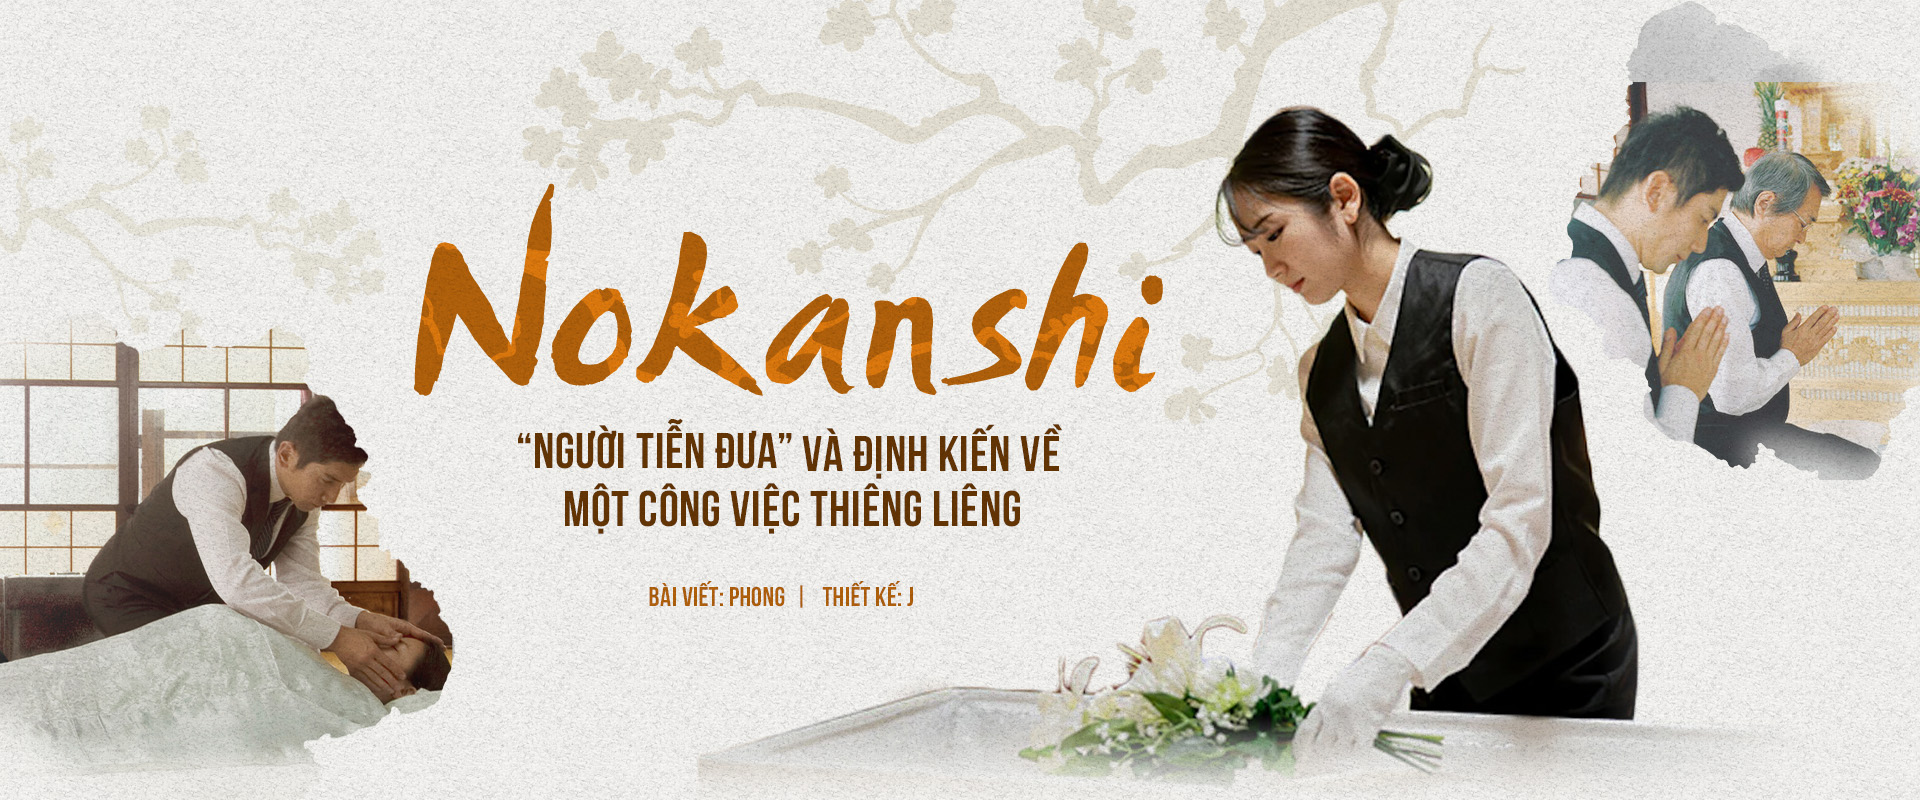 Nokanshi - “Người tiễn đưa” và định kiến về một công việc thiêng liêng.